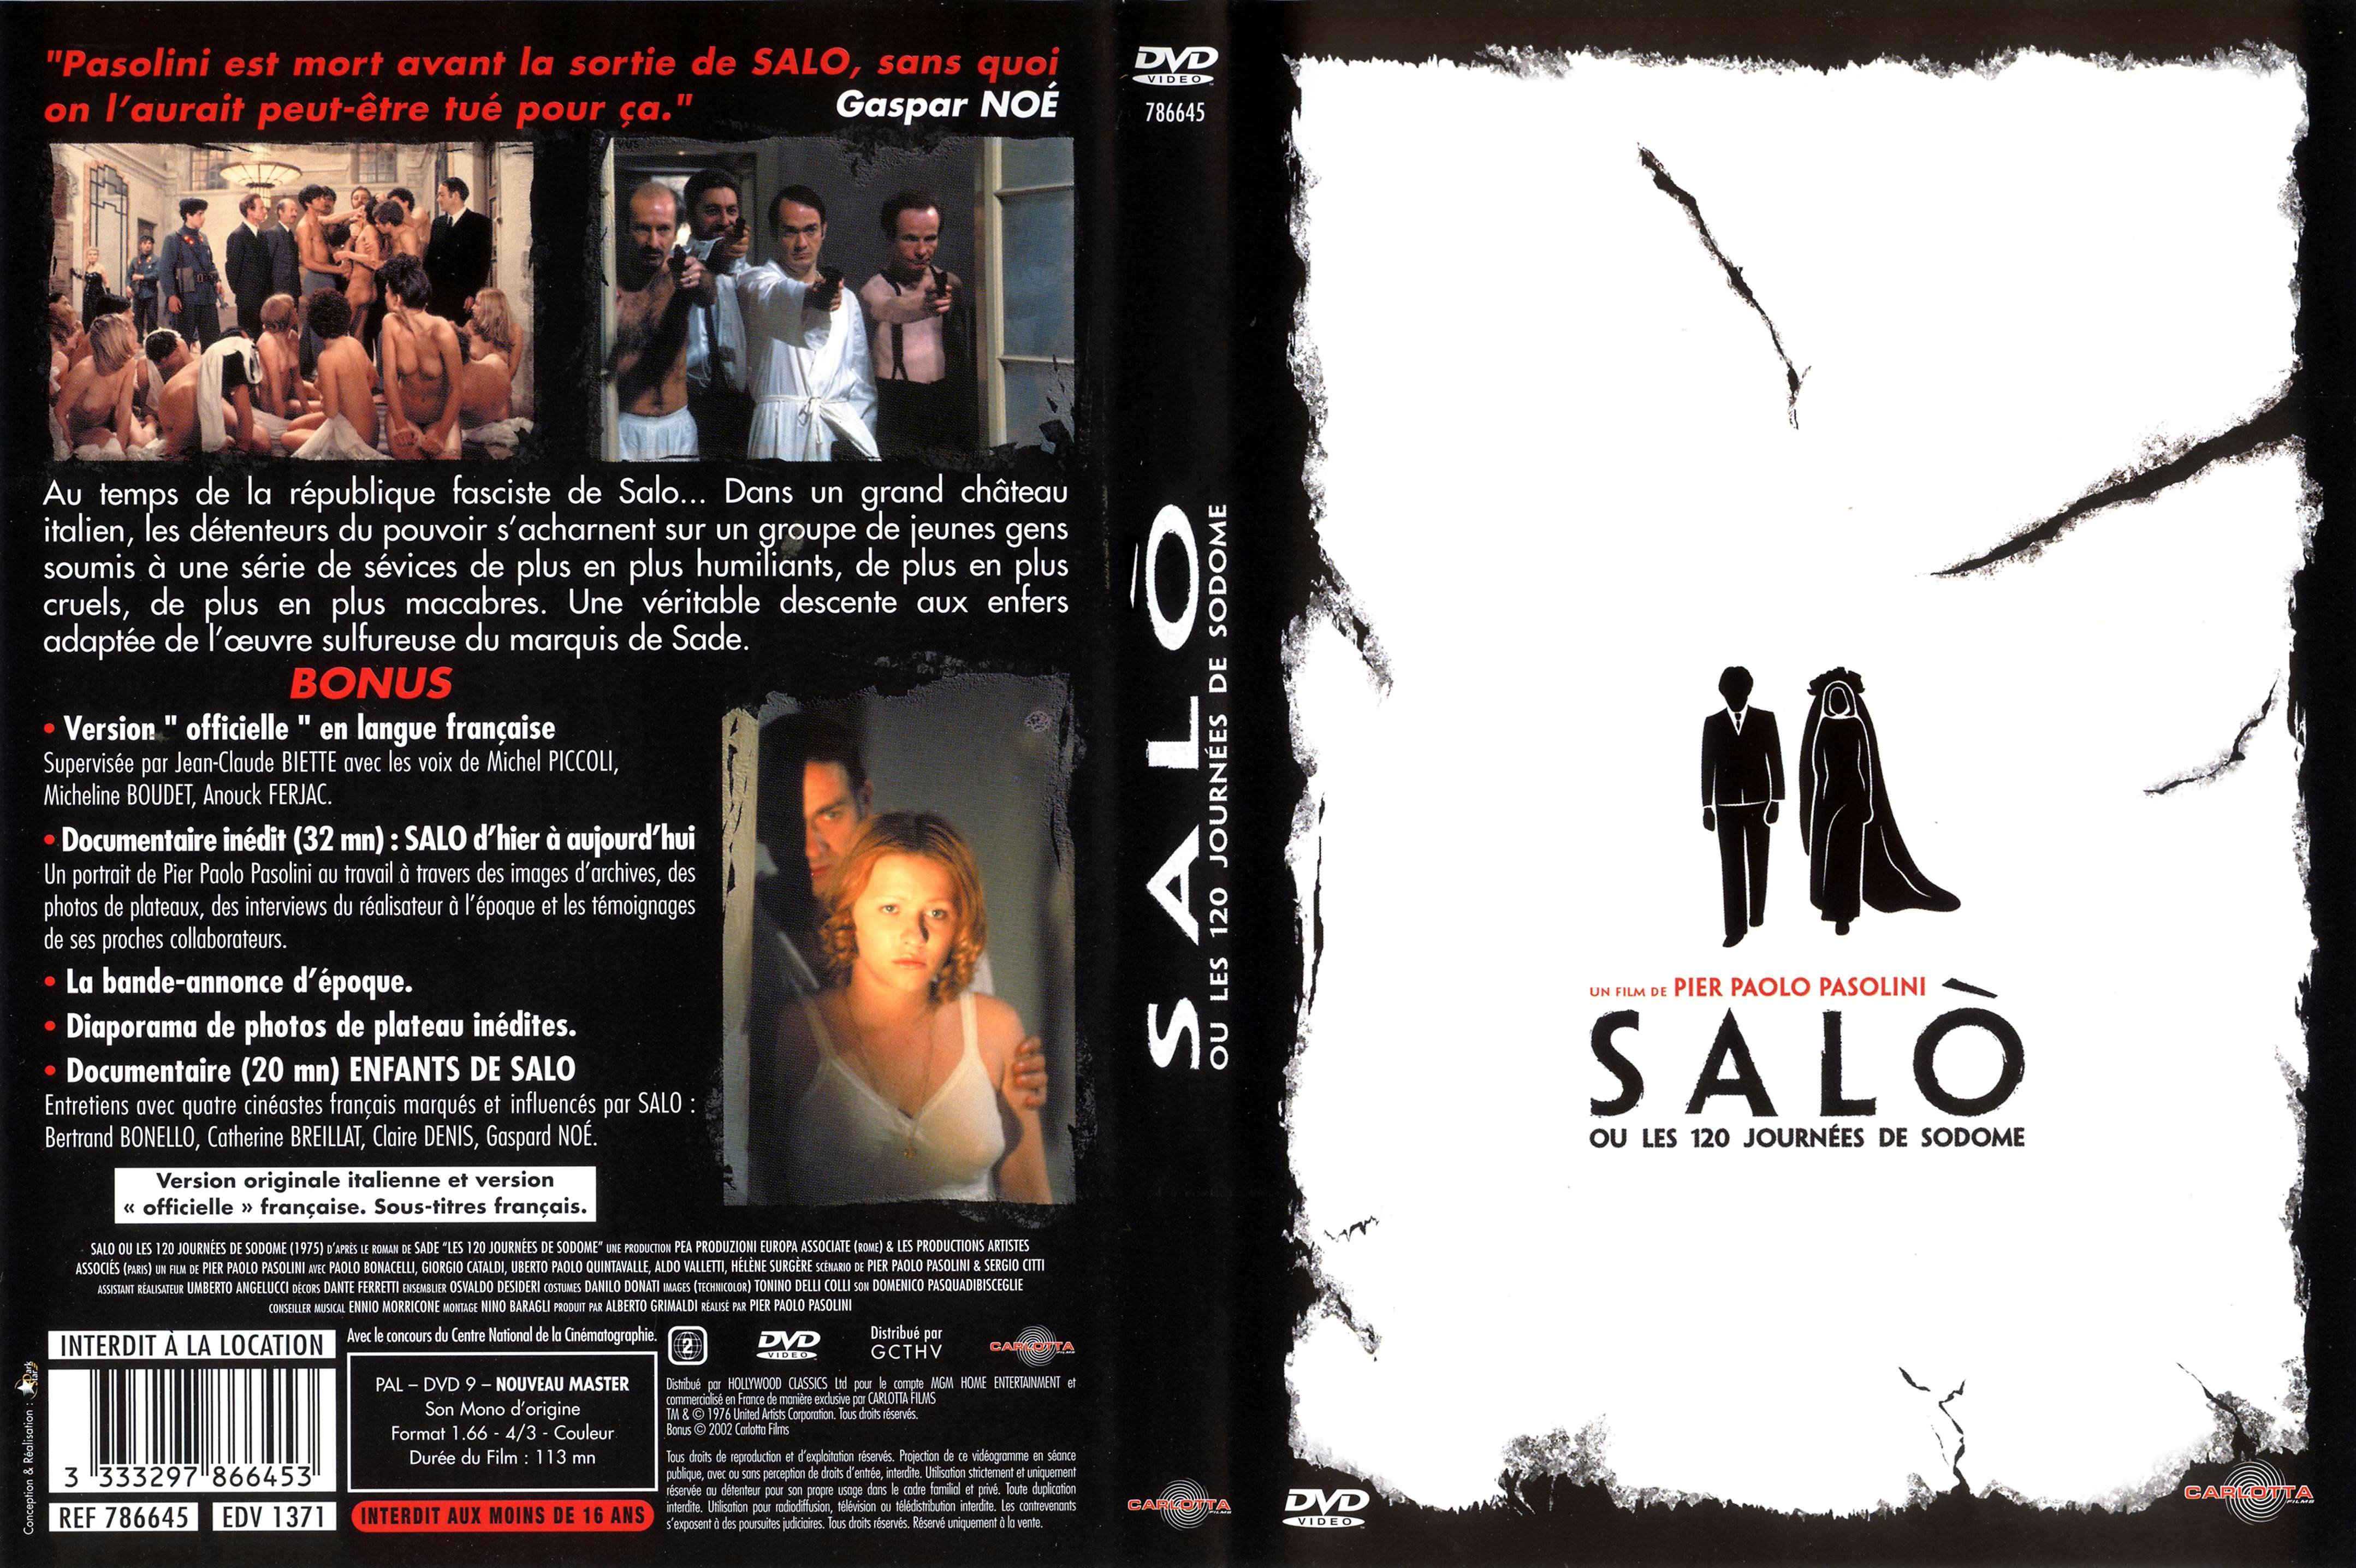 Jaquette DVD Salo ou les 120 journees de Sodome v2